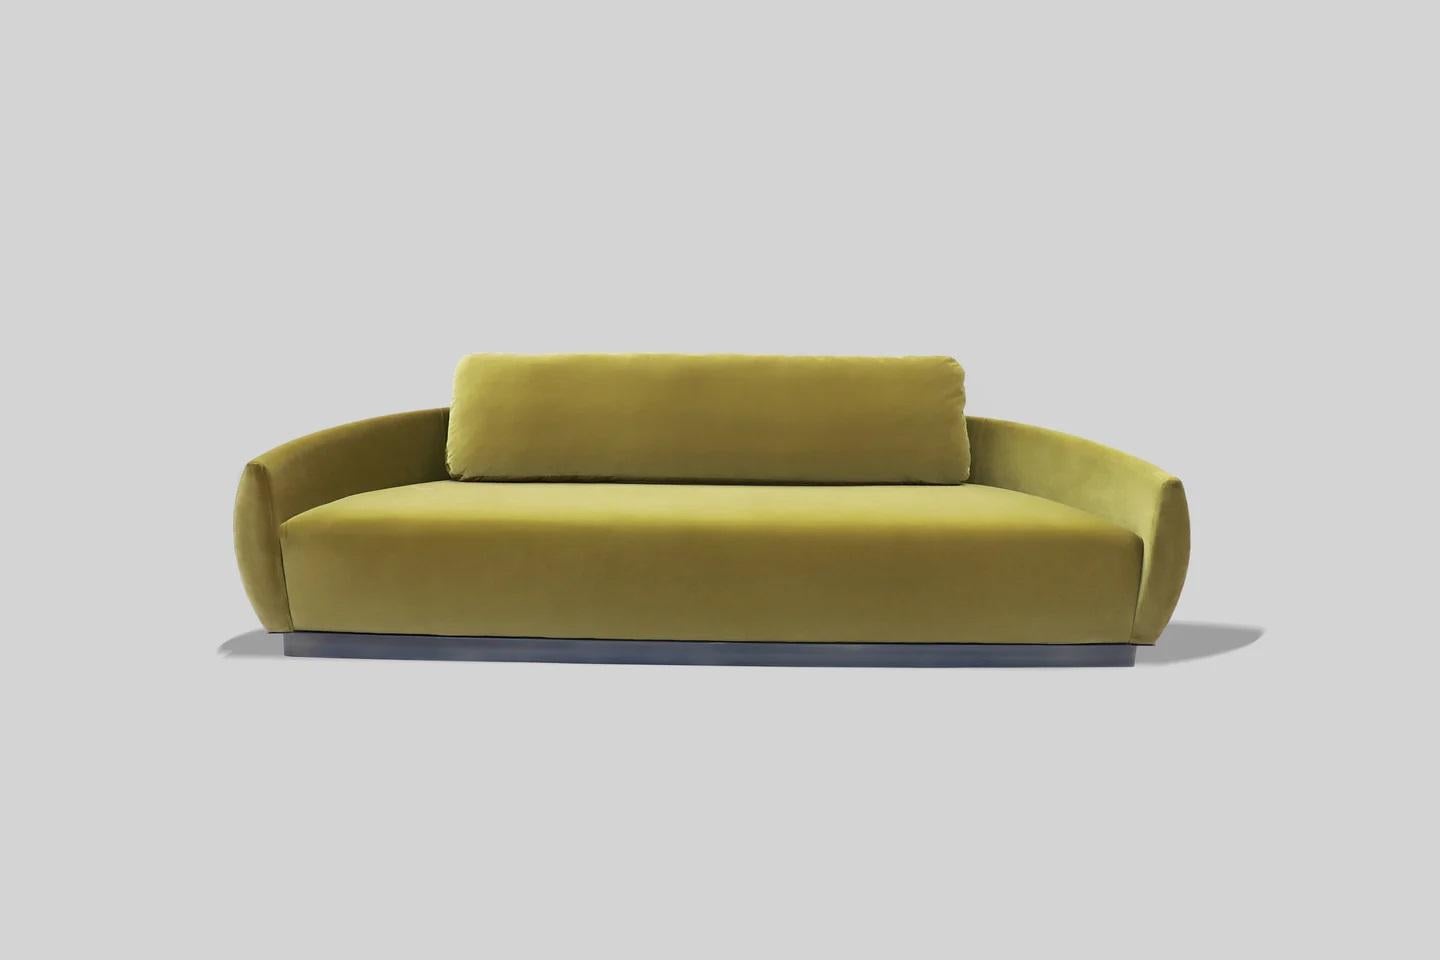 Canapé vert œuf d'Atra Design
Dimensions : D 250 x L 956 x H 62,4 cm.
MATERIAL : Laiton et revêtement en tissu de velours.

Différentes options de tissus disponibles. Veuillez nous contacter. 

Design/One
Nous sommes Atra, une marque de mobilier